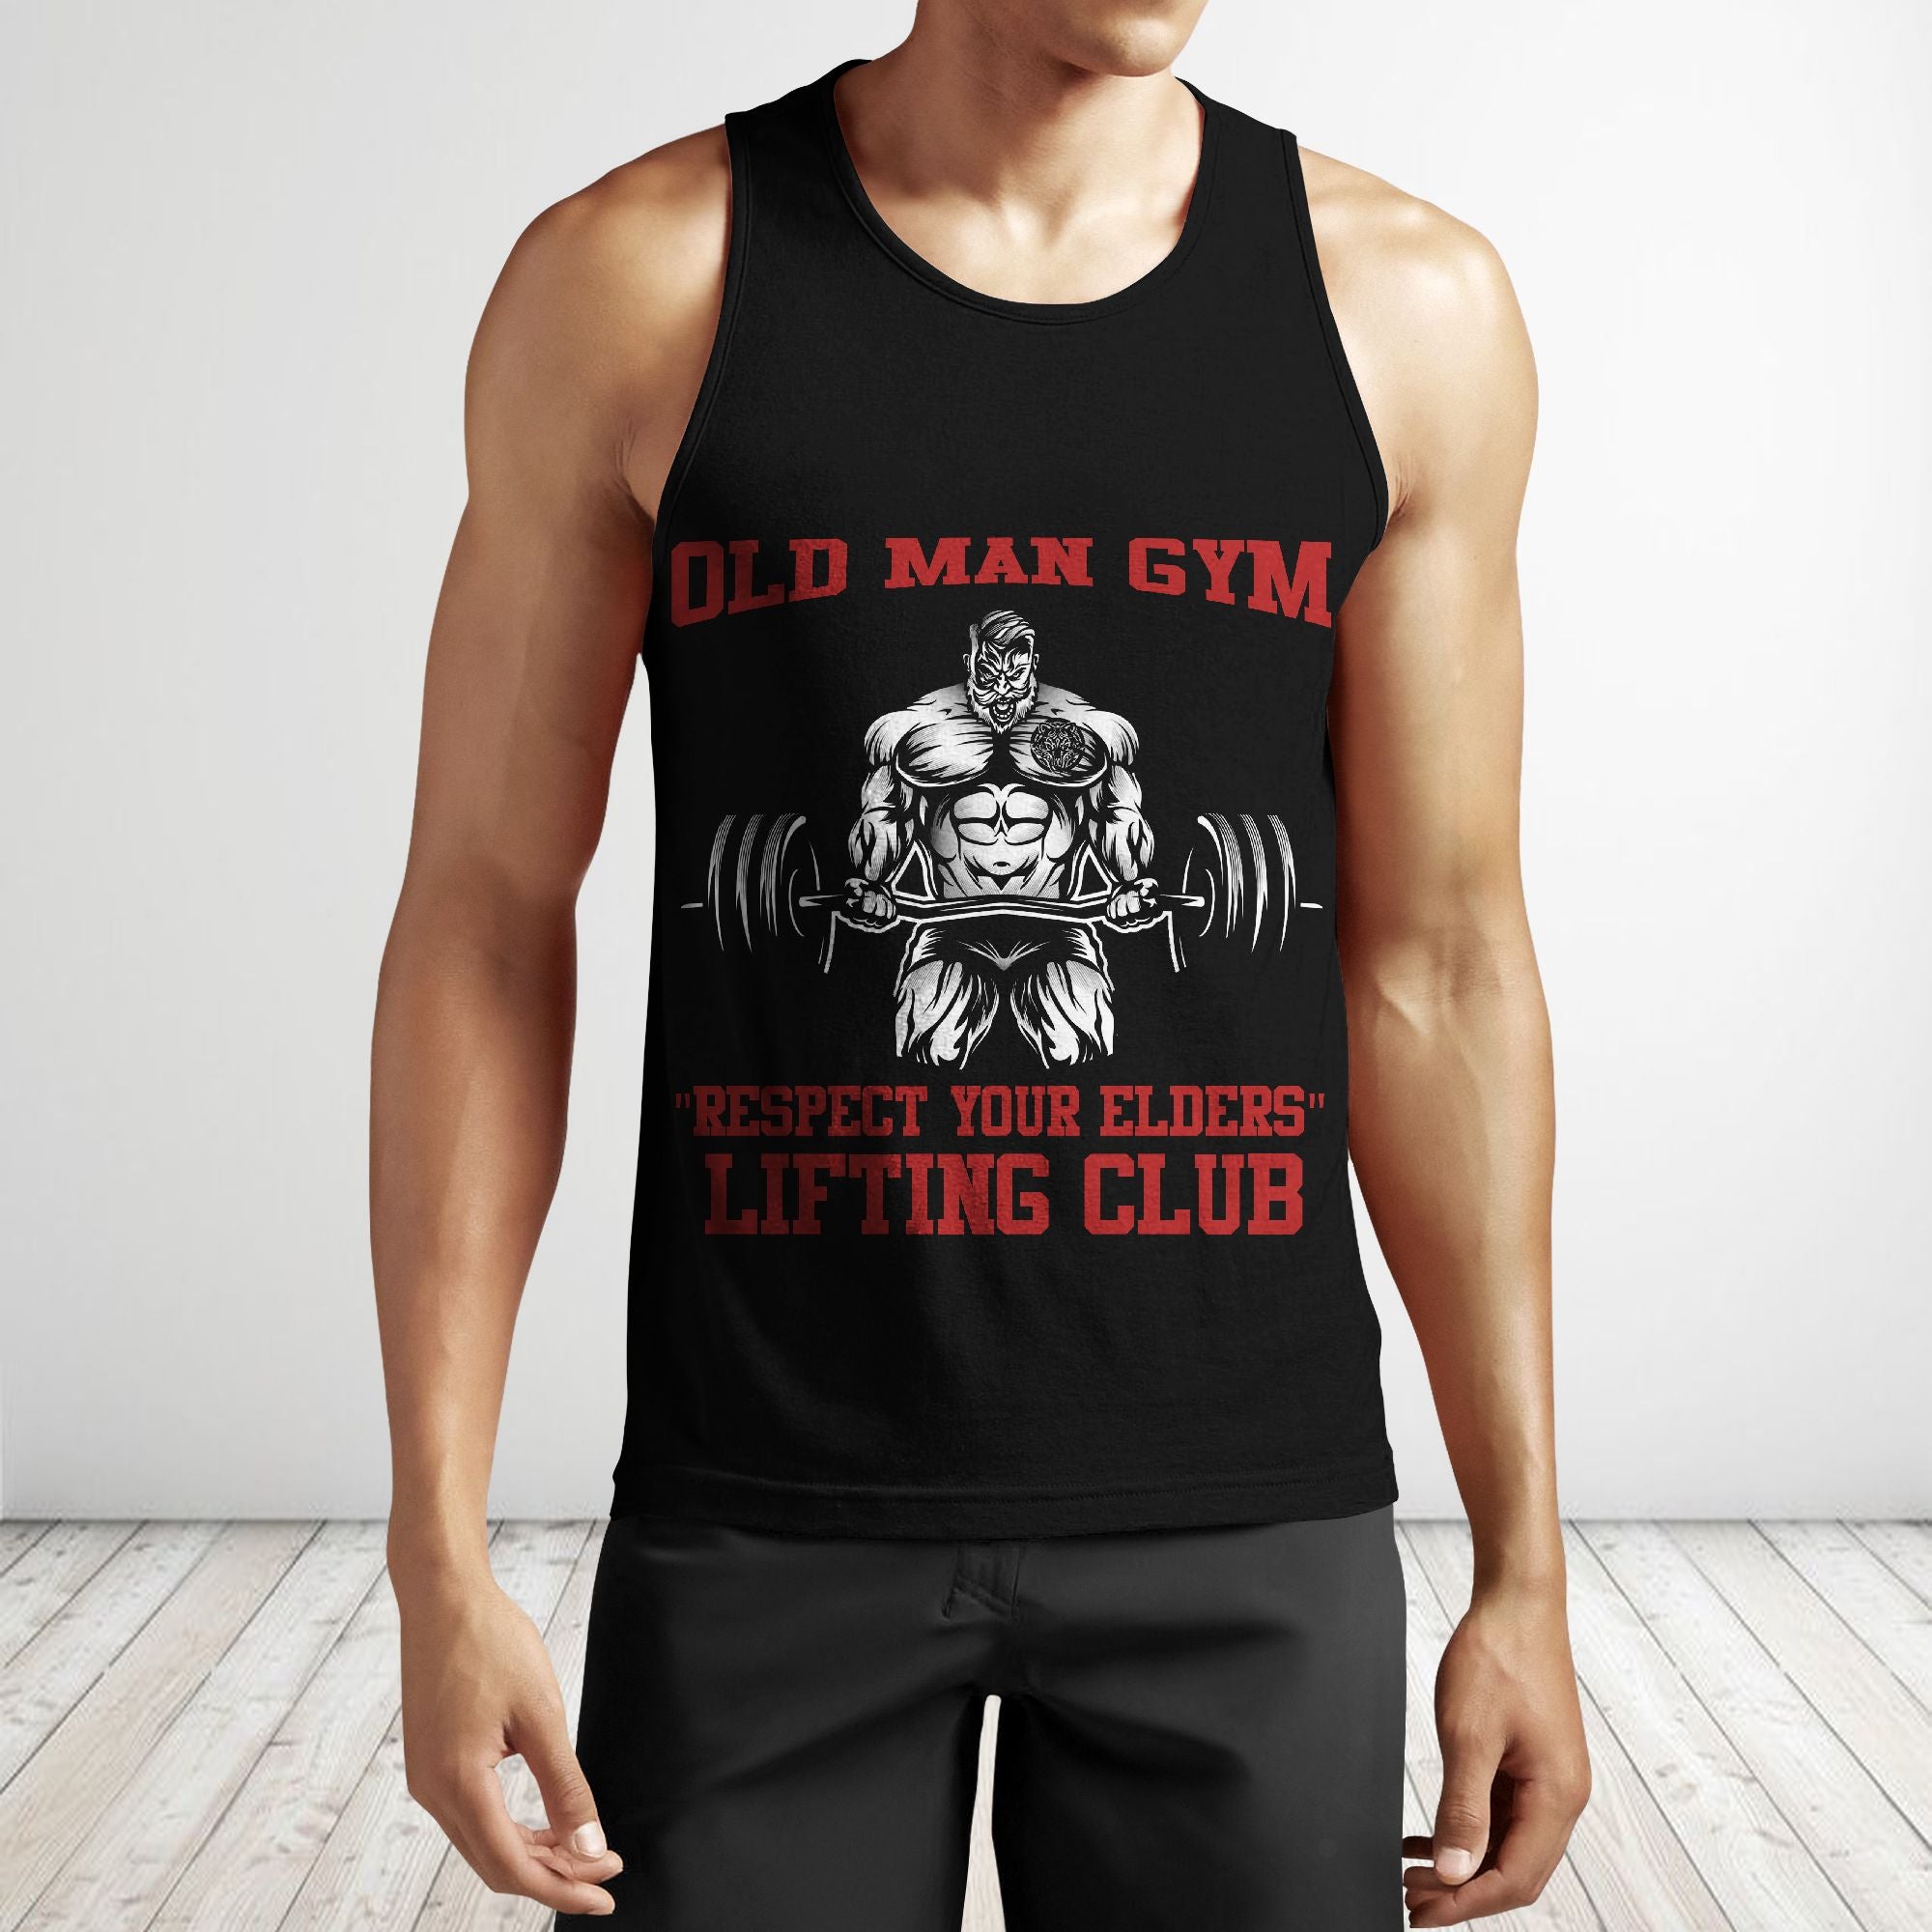 Weightlifting Club Tank